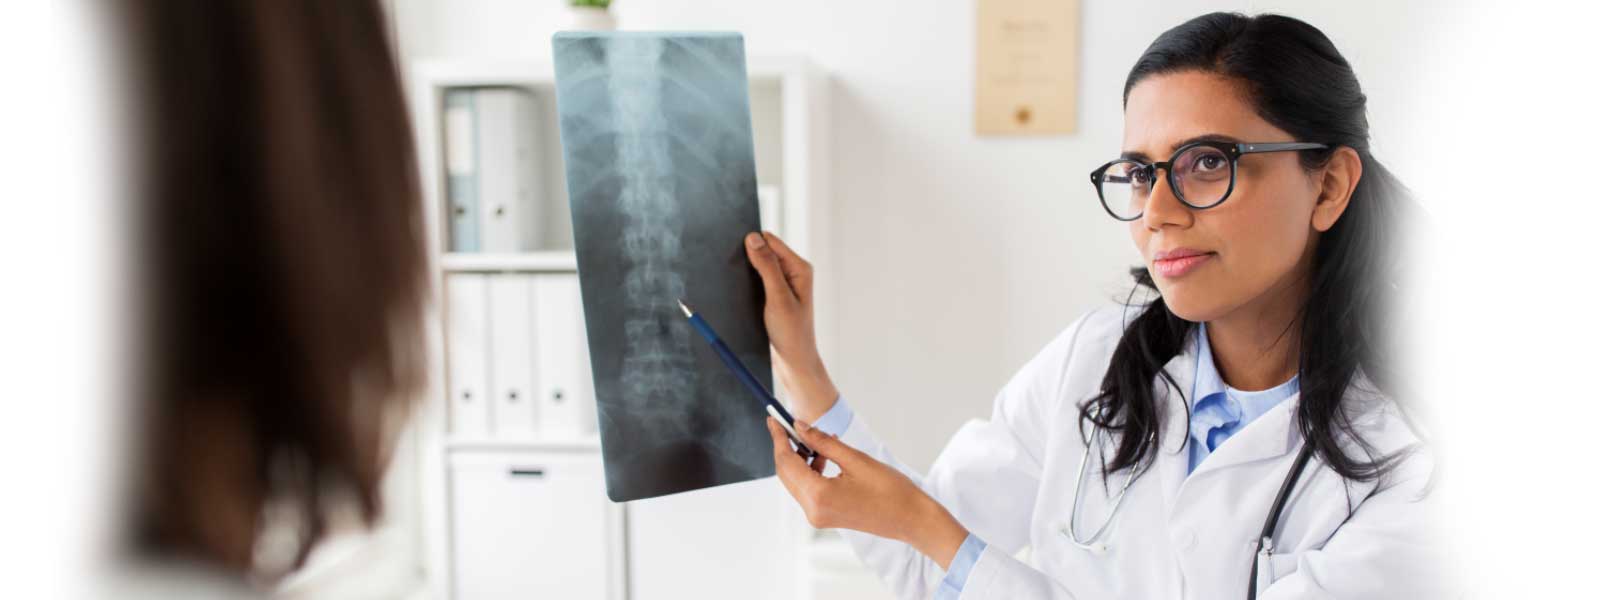 docteur montrant une radiographie de la colonne vertébrale